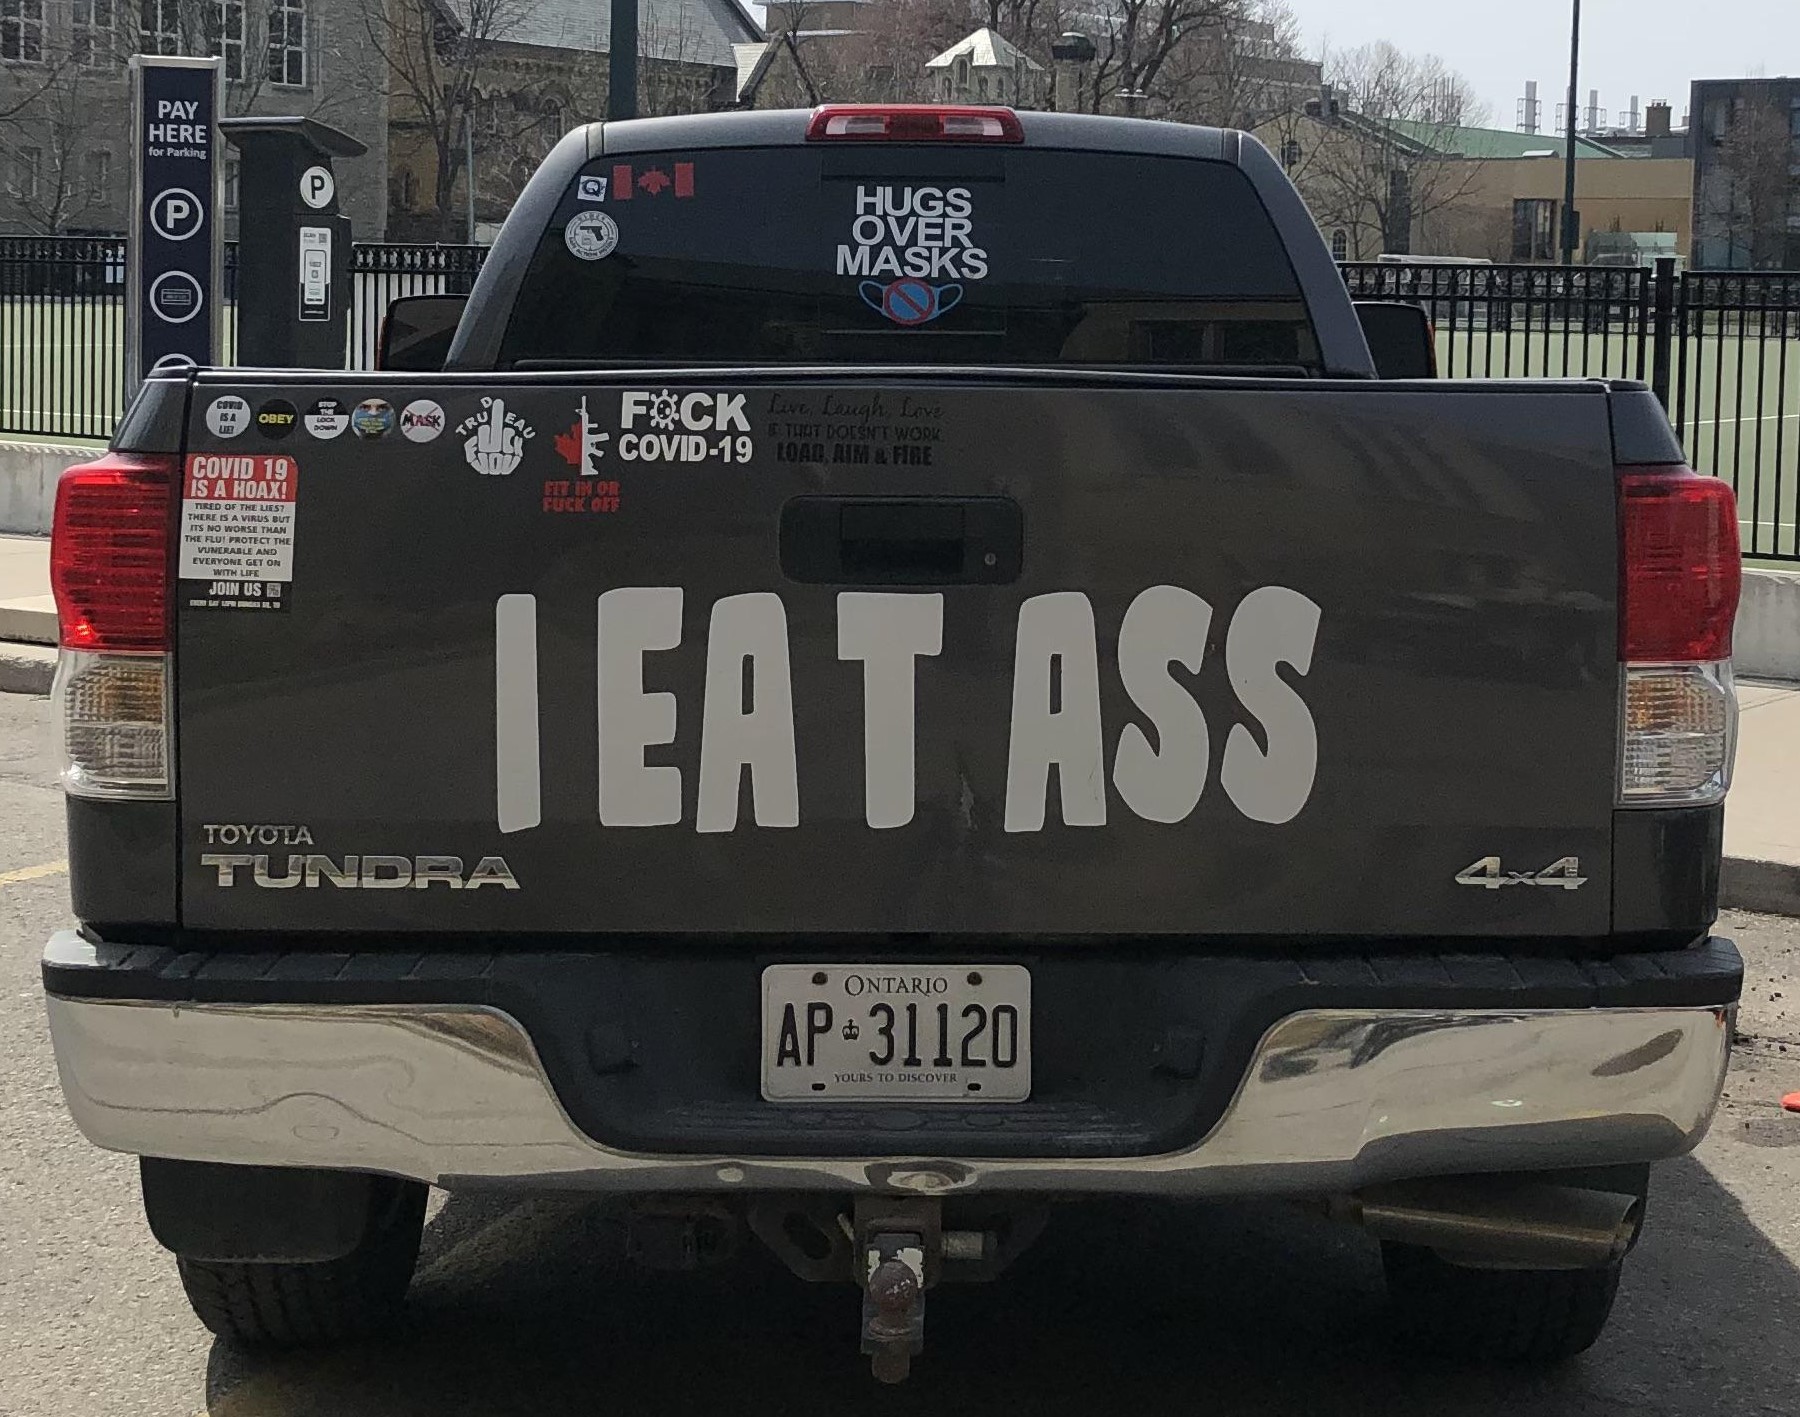 I EAT ASS. PYGear.com